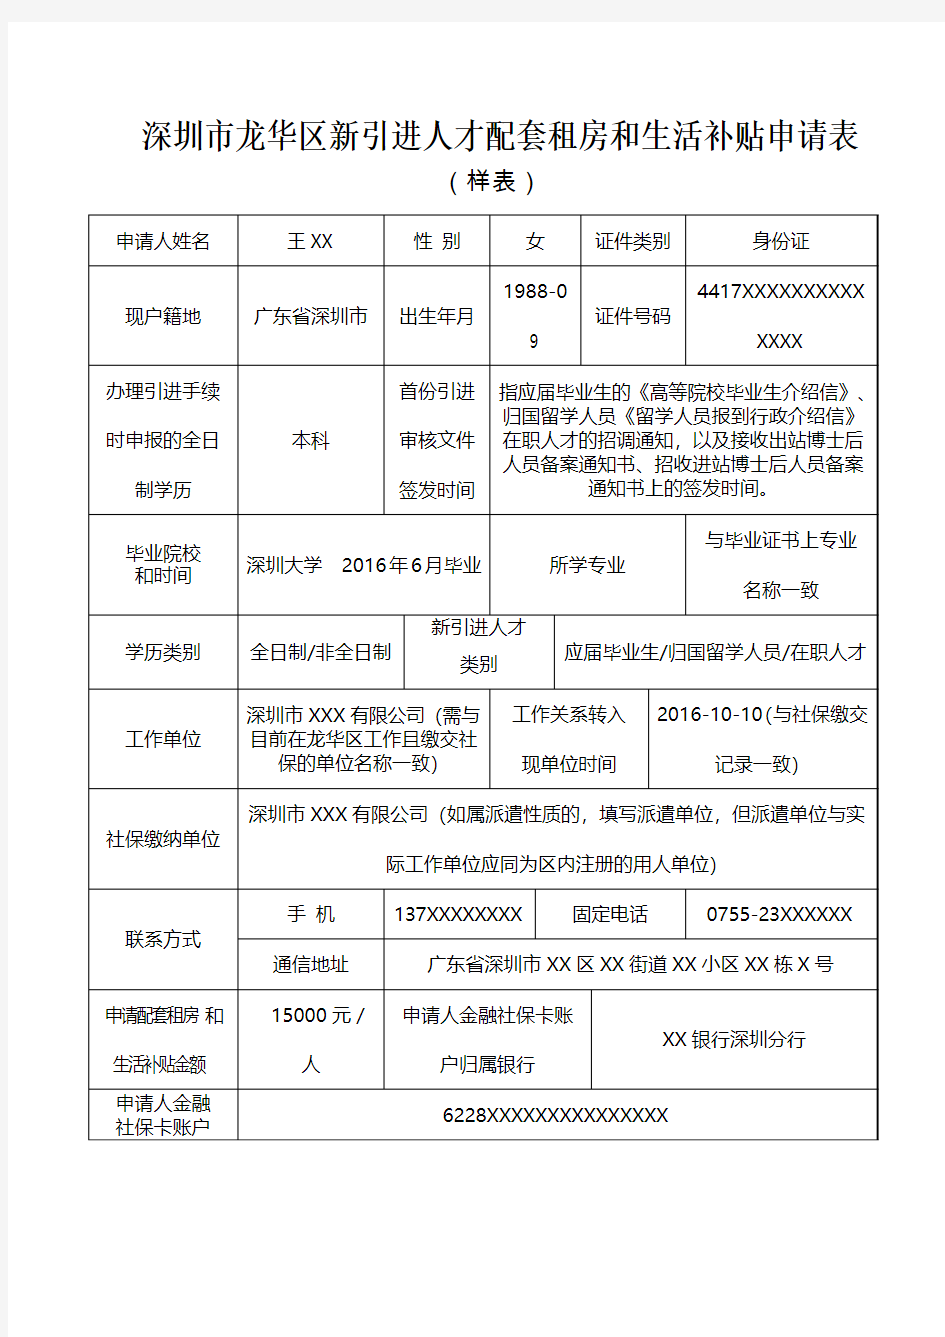 深圳市龙华区新引进人才配套租房和生活补贴申请表(样表)